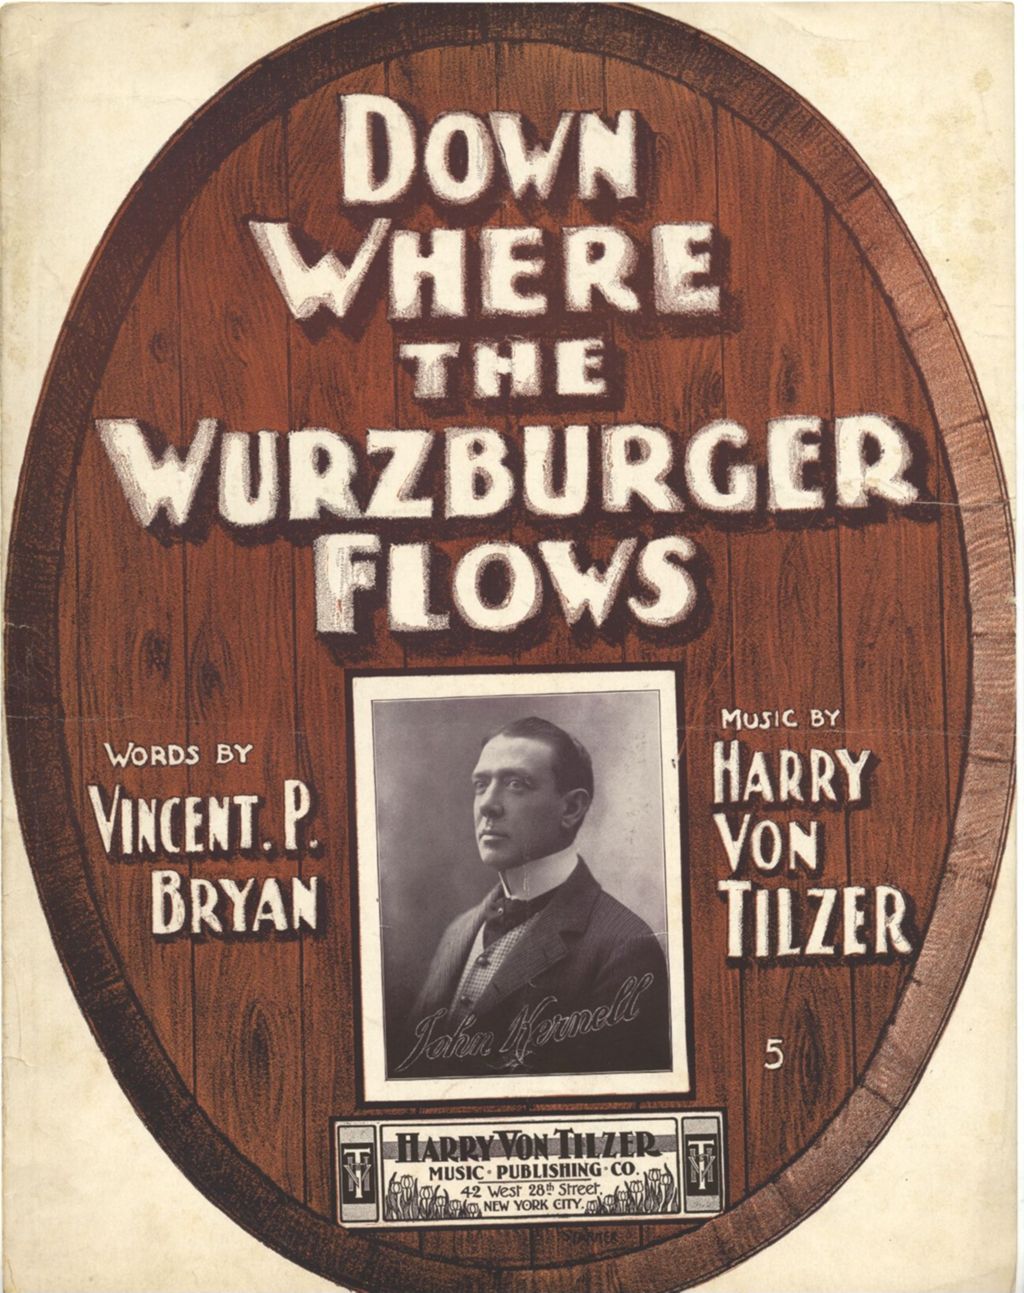 Down Where the Wurzburger Flows